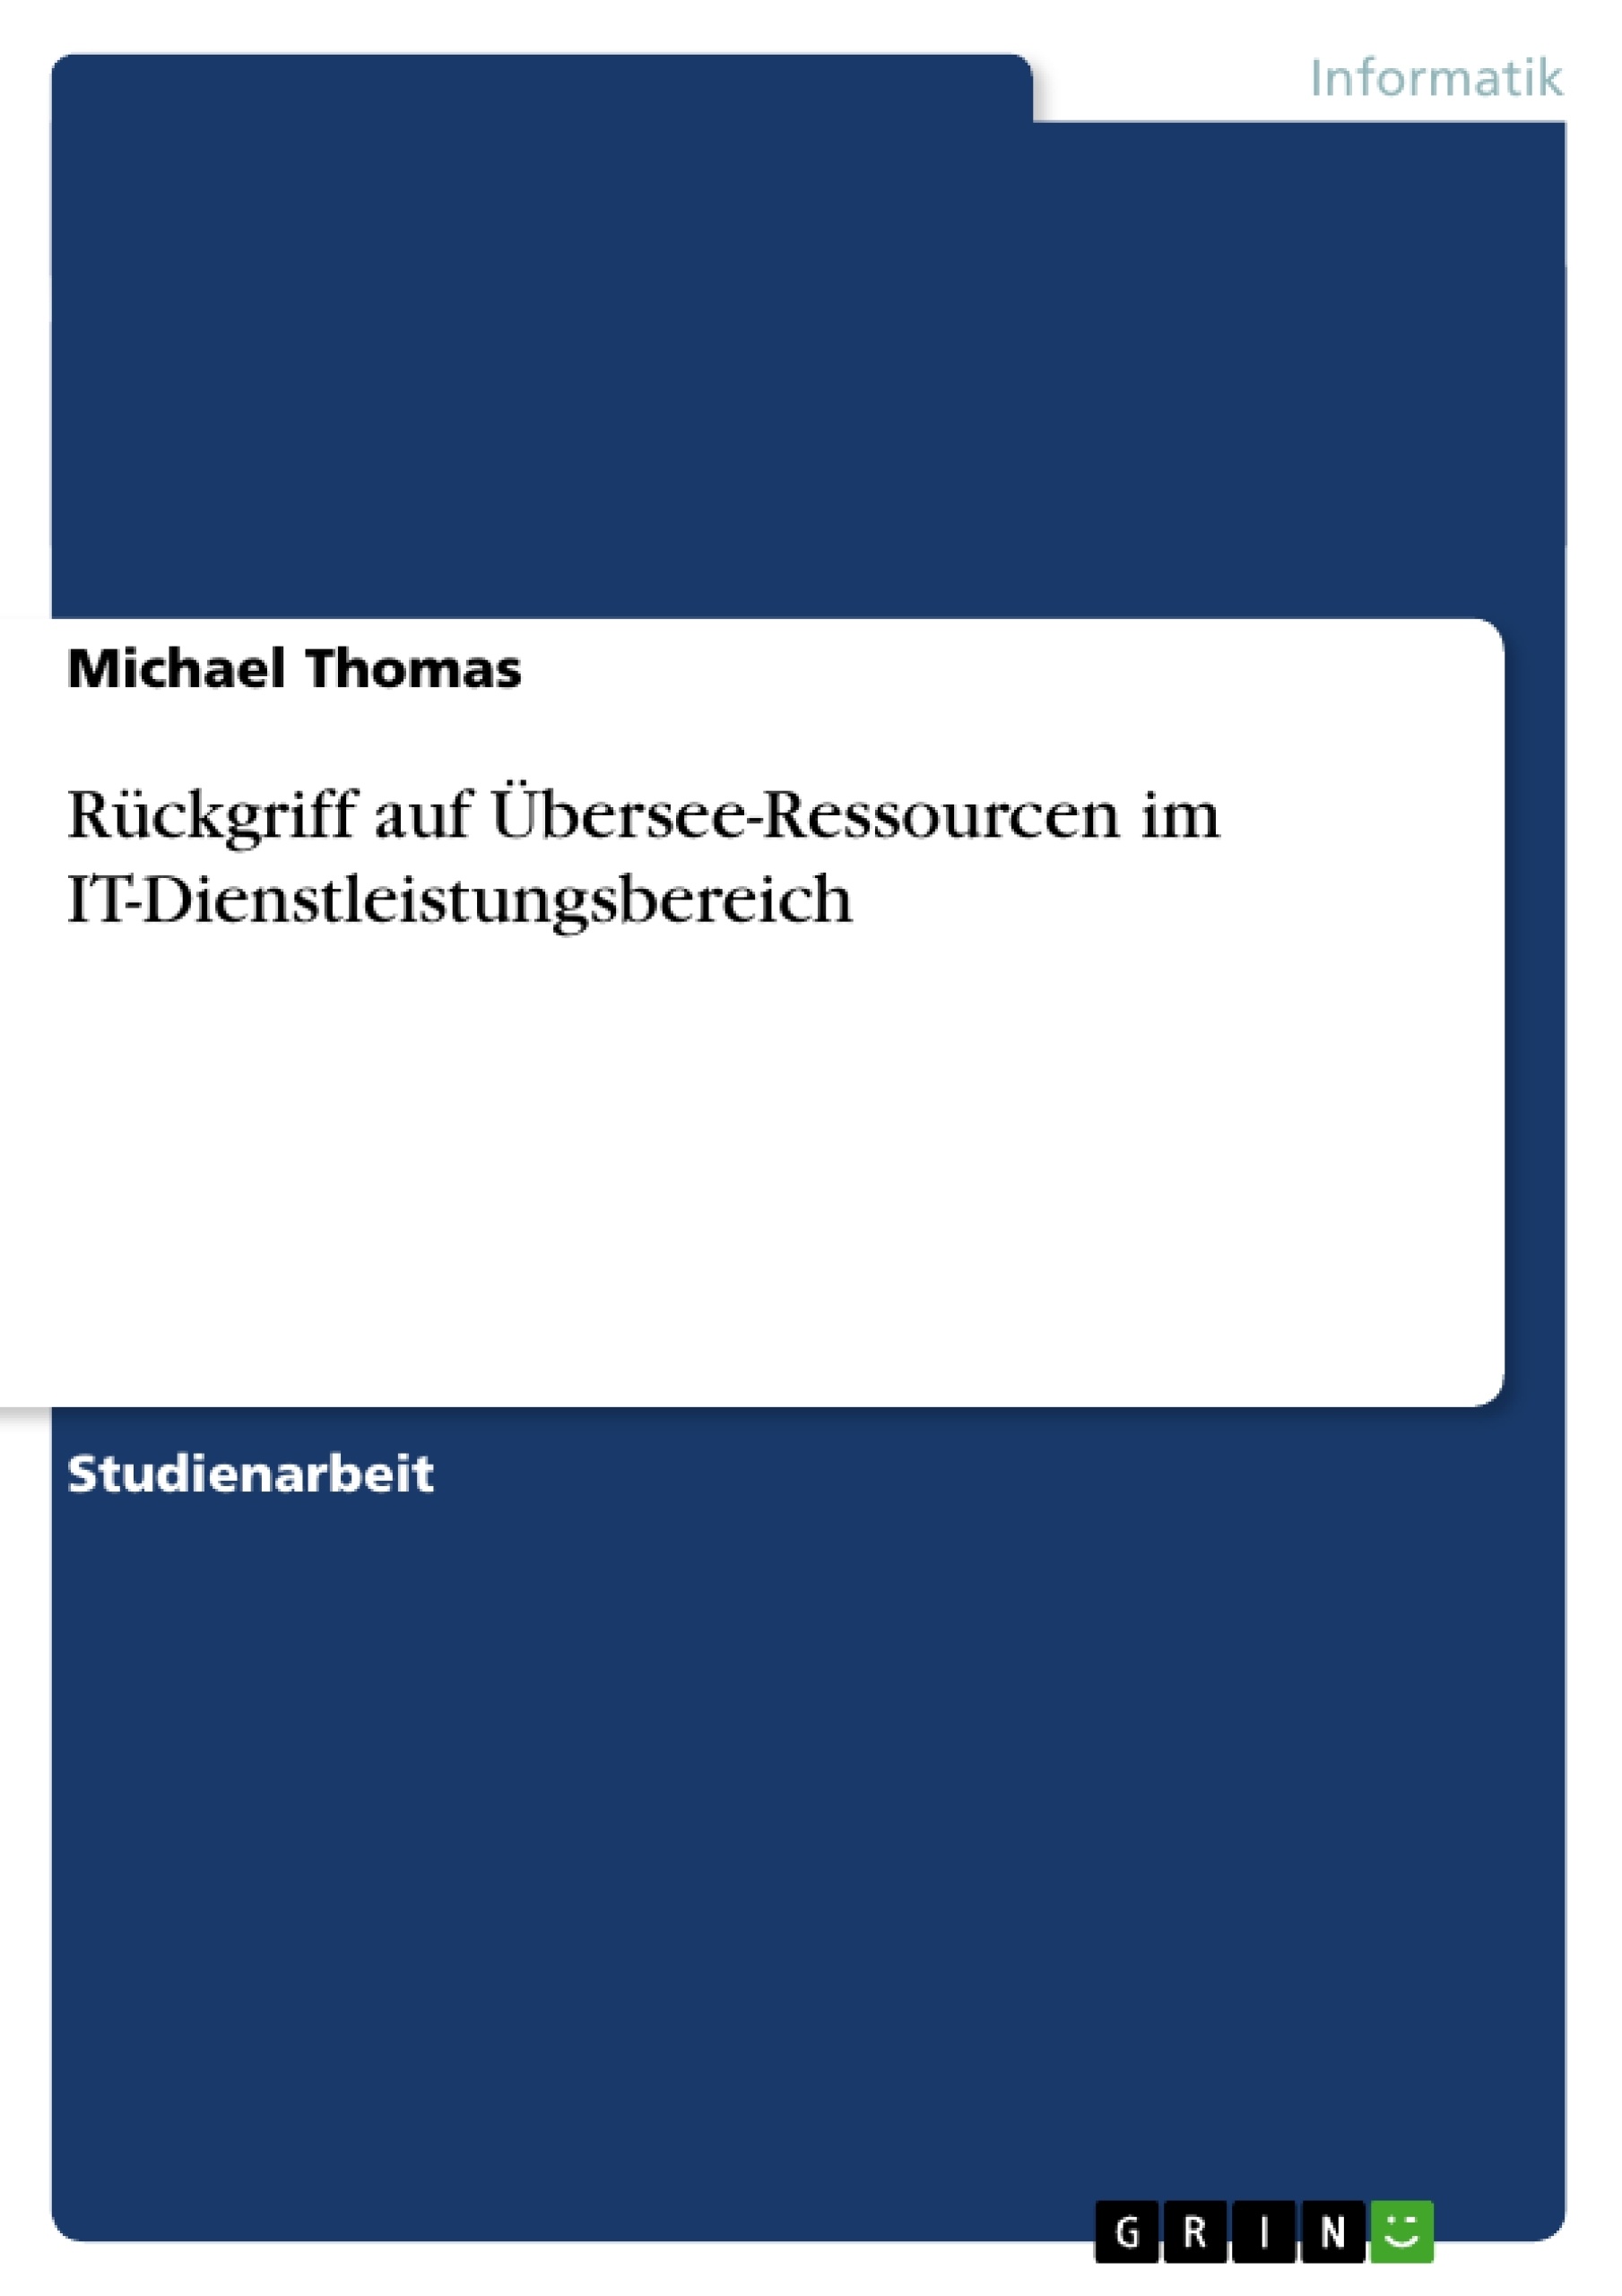 Title: Rückgriff auf Übersee-Ressourcen im IT-Dienstleistungsbereich